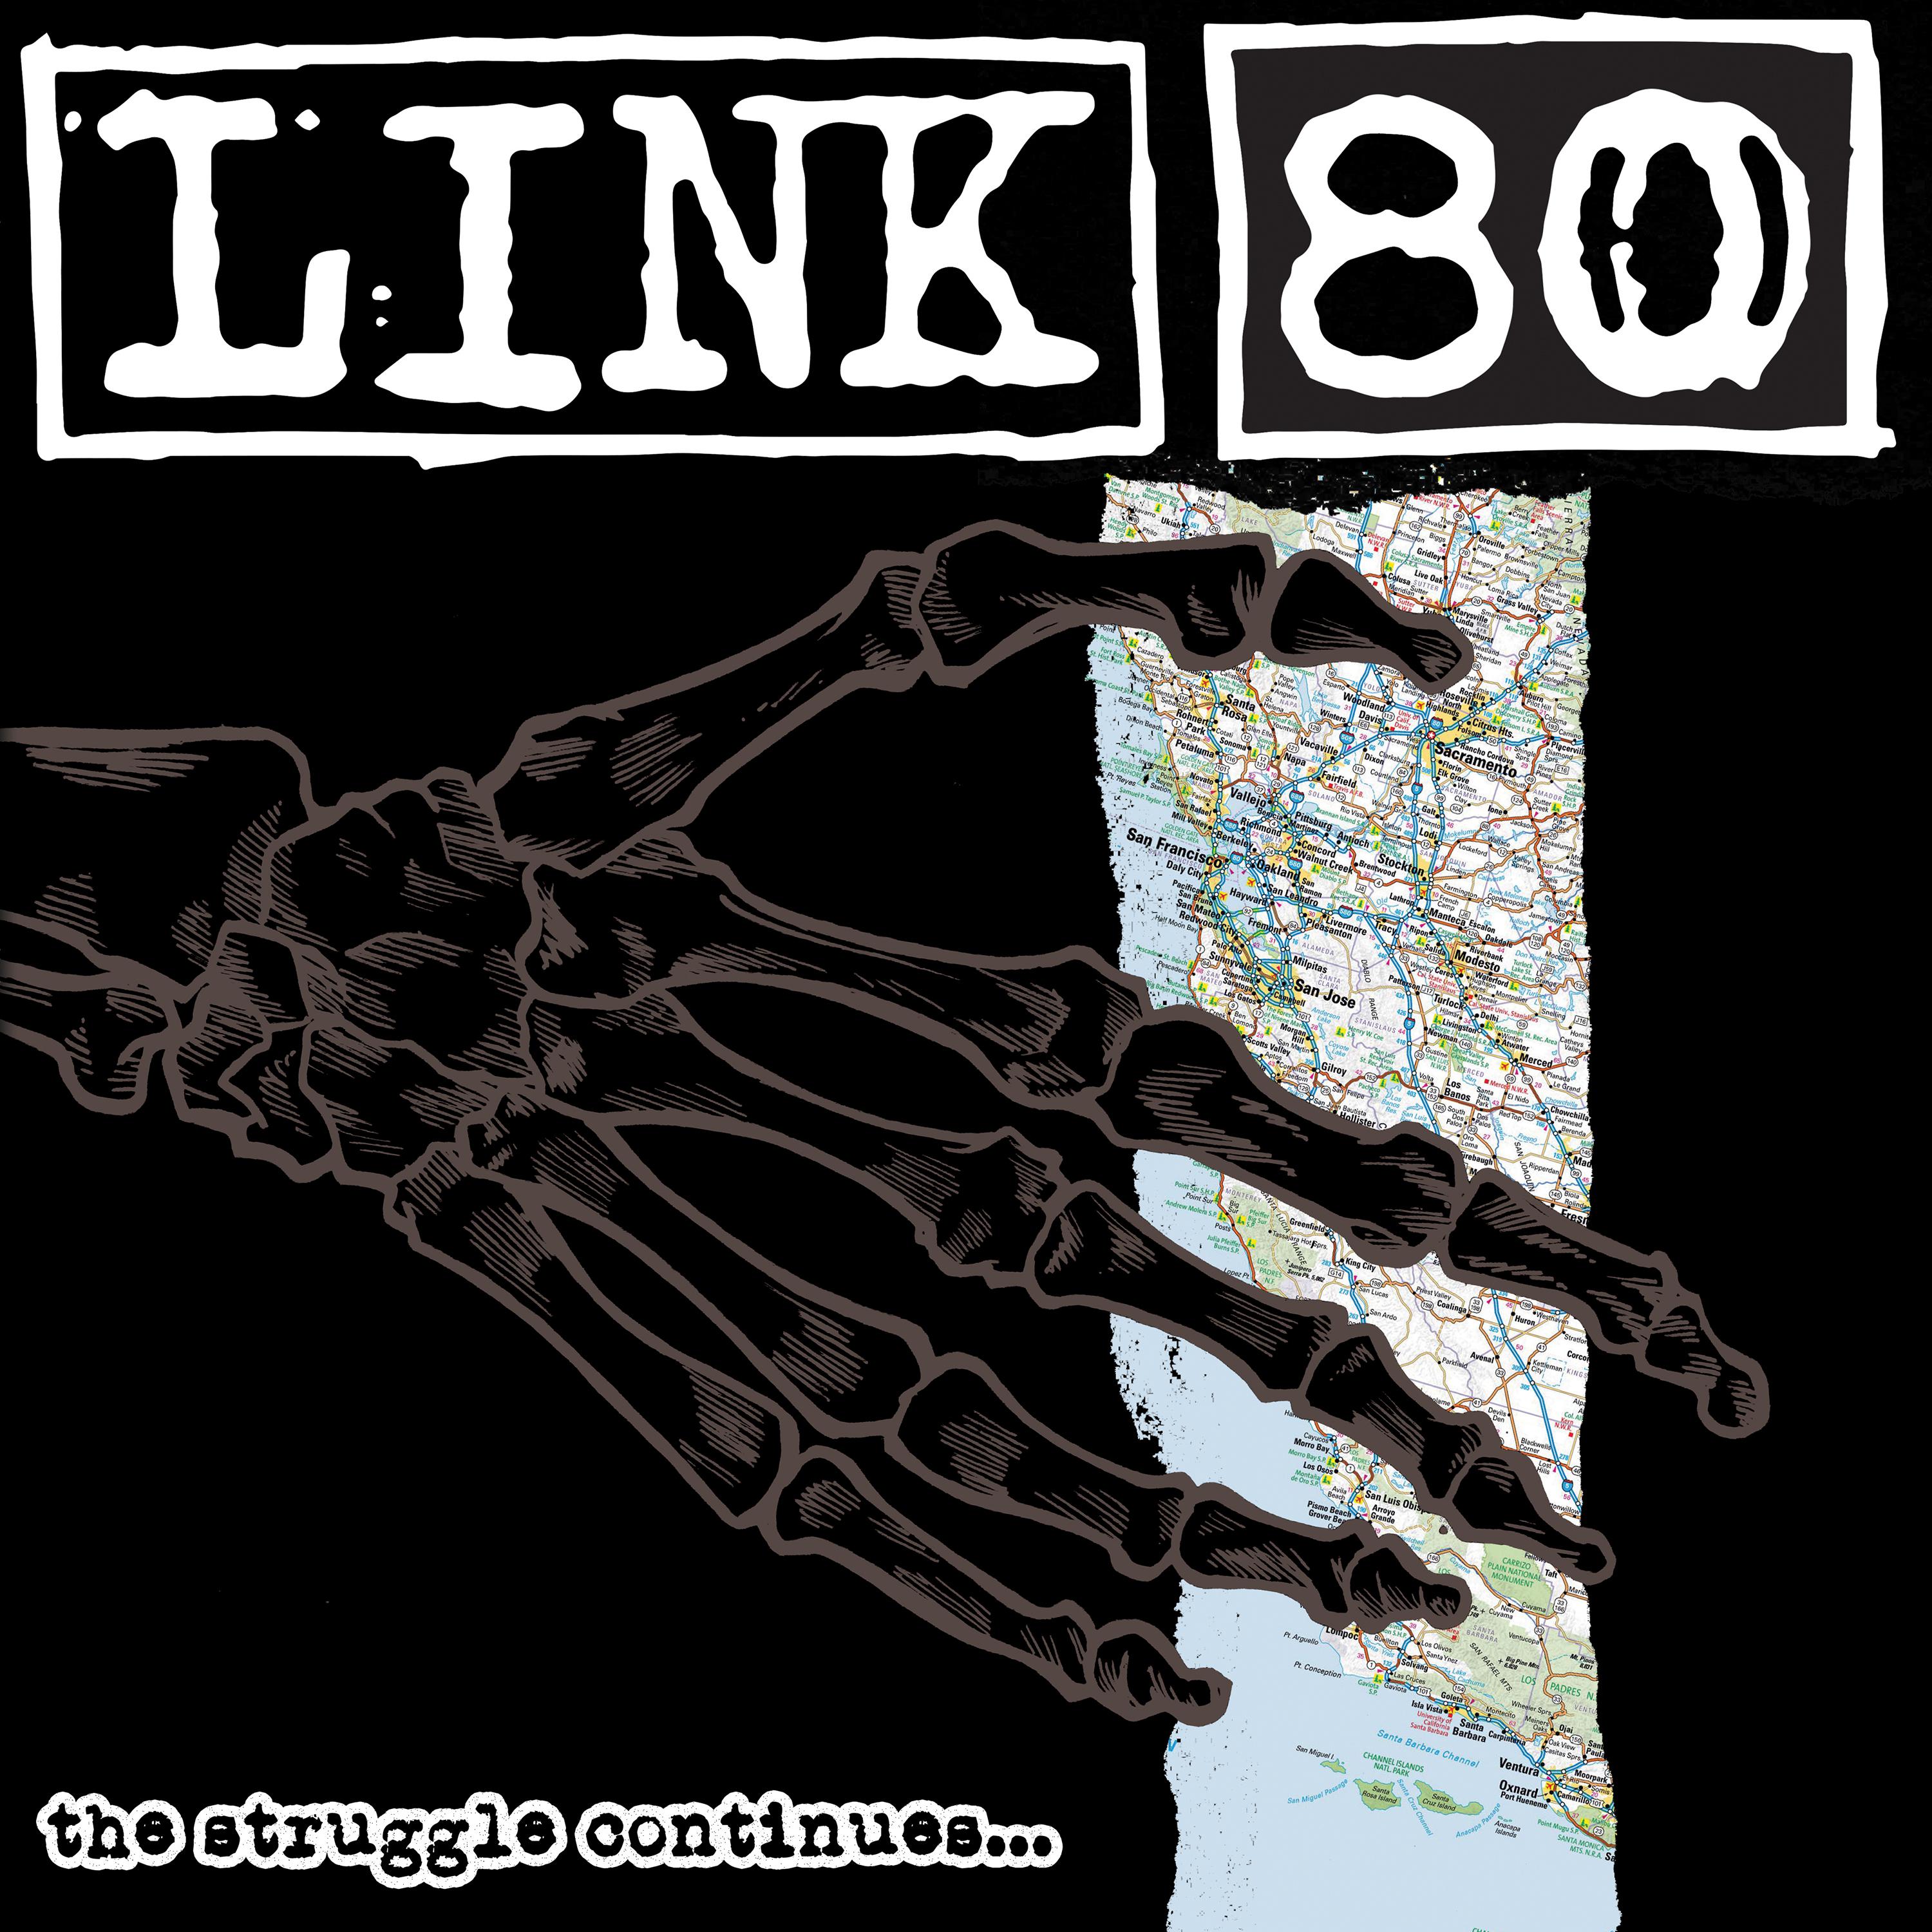 Link 80 - Waste